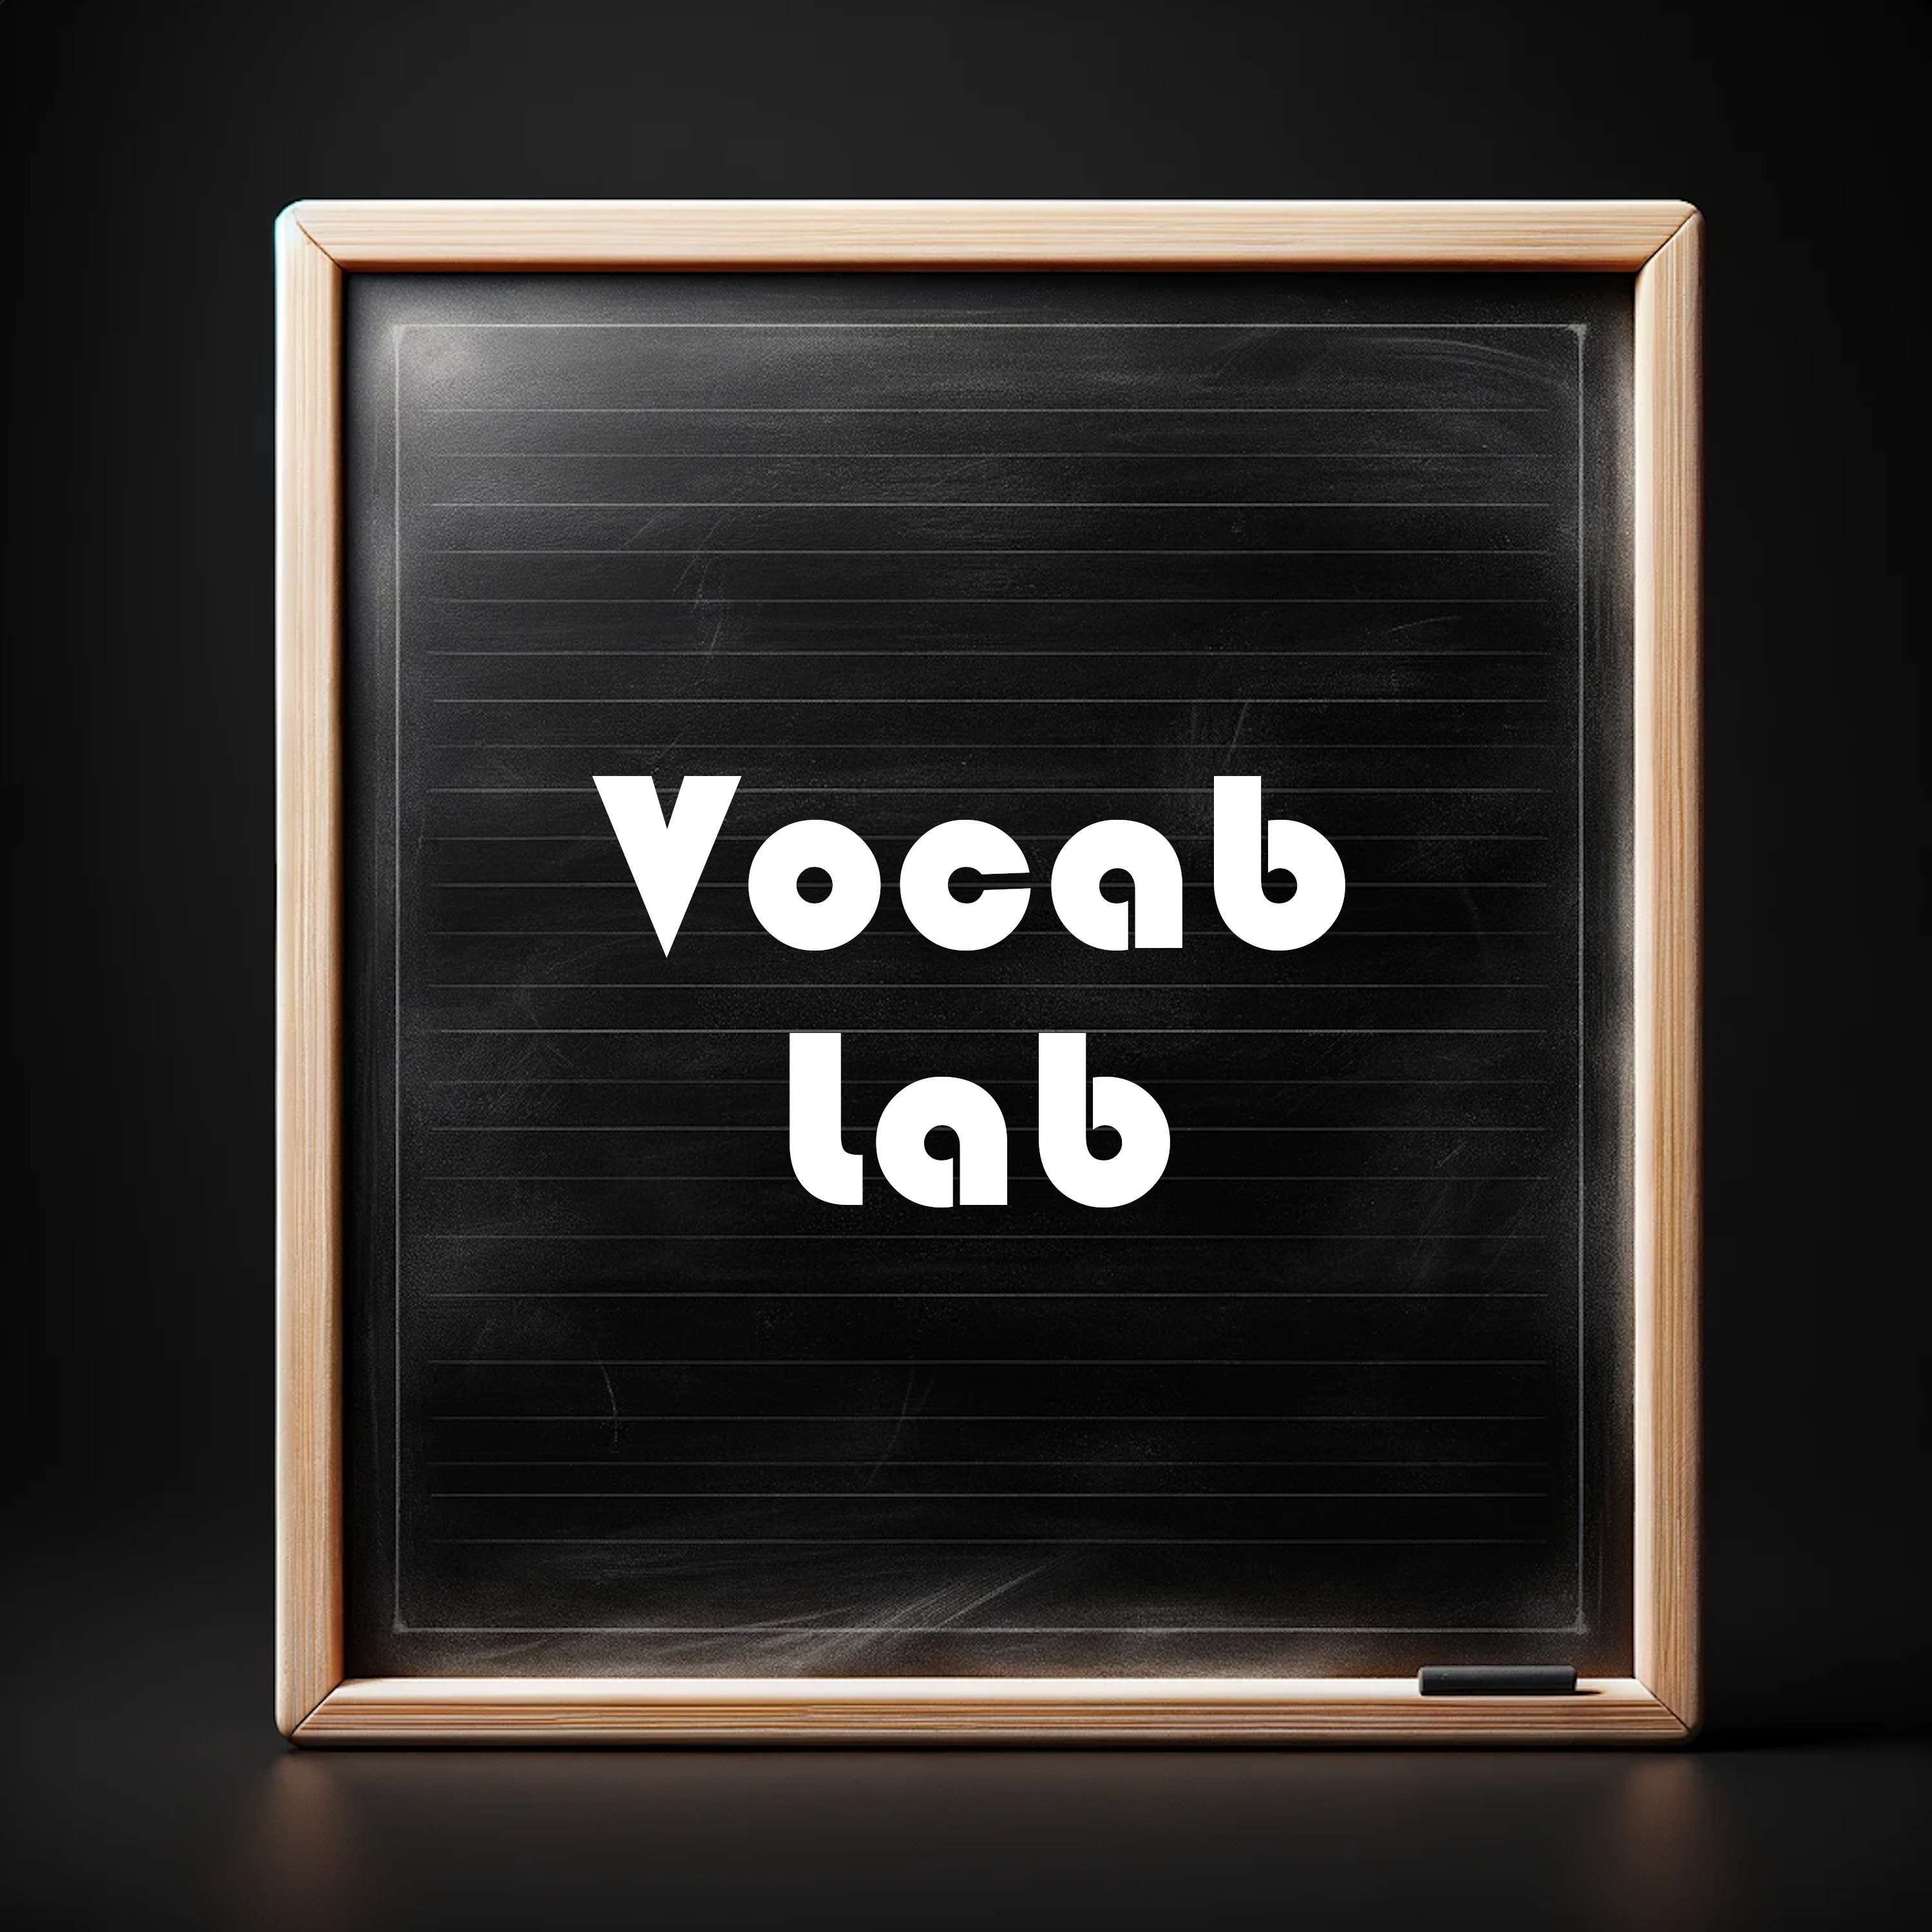 Vocab Lab